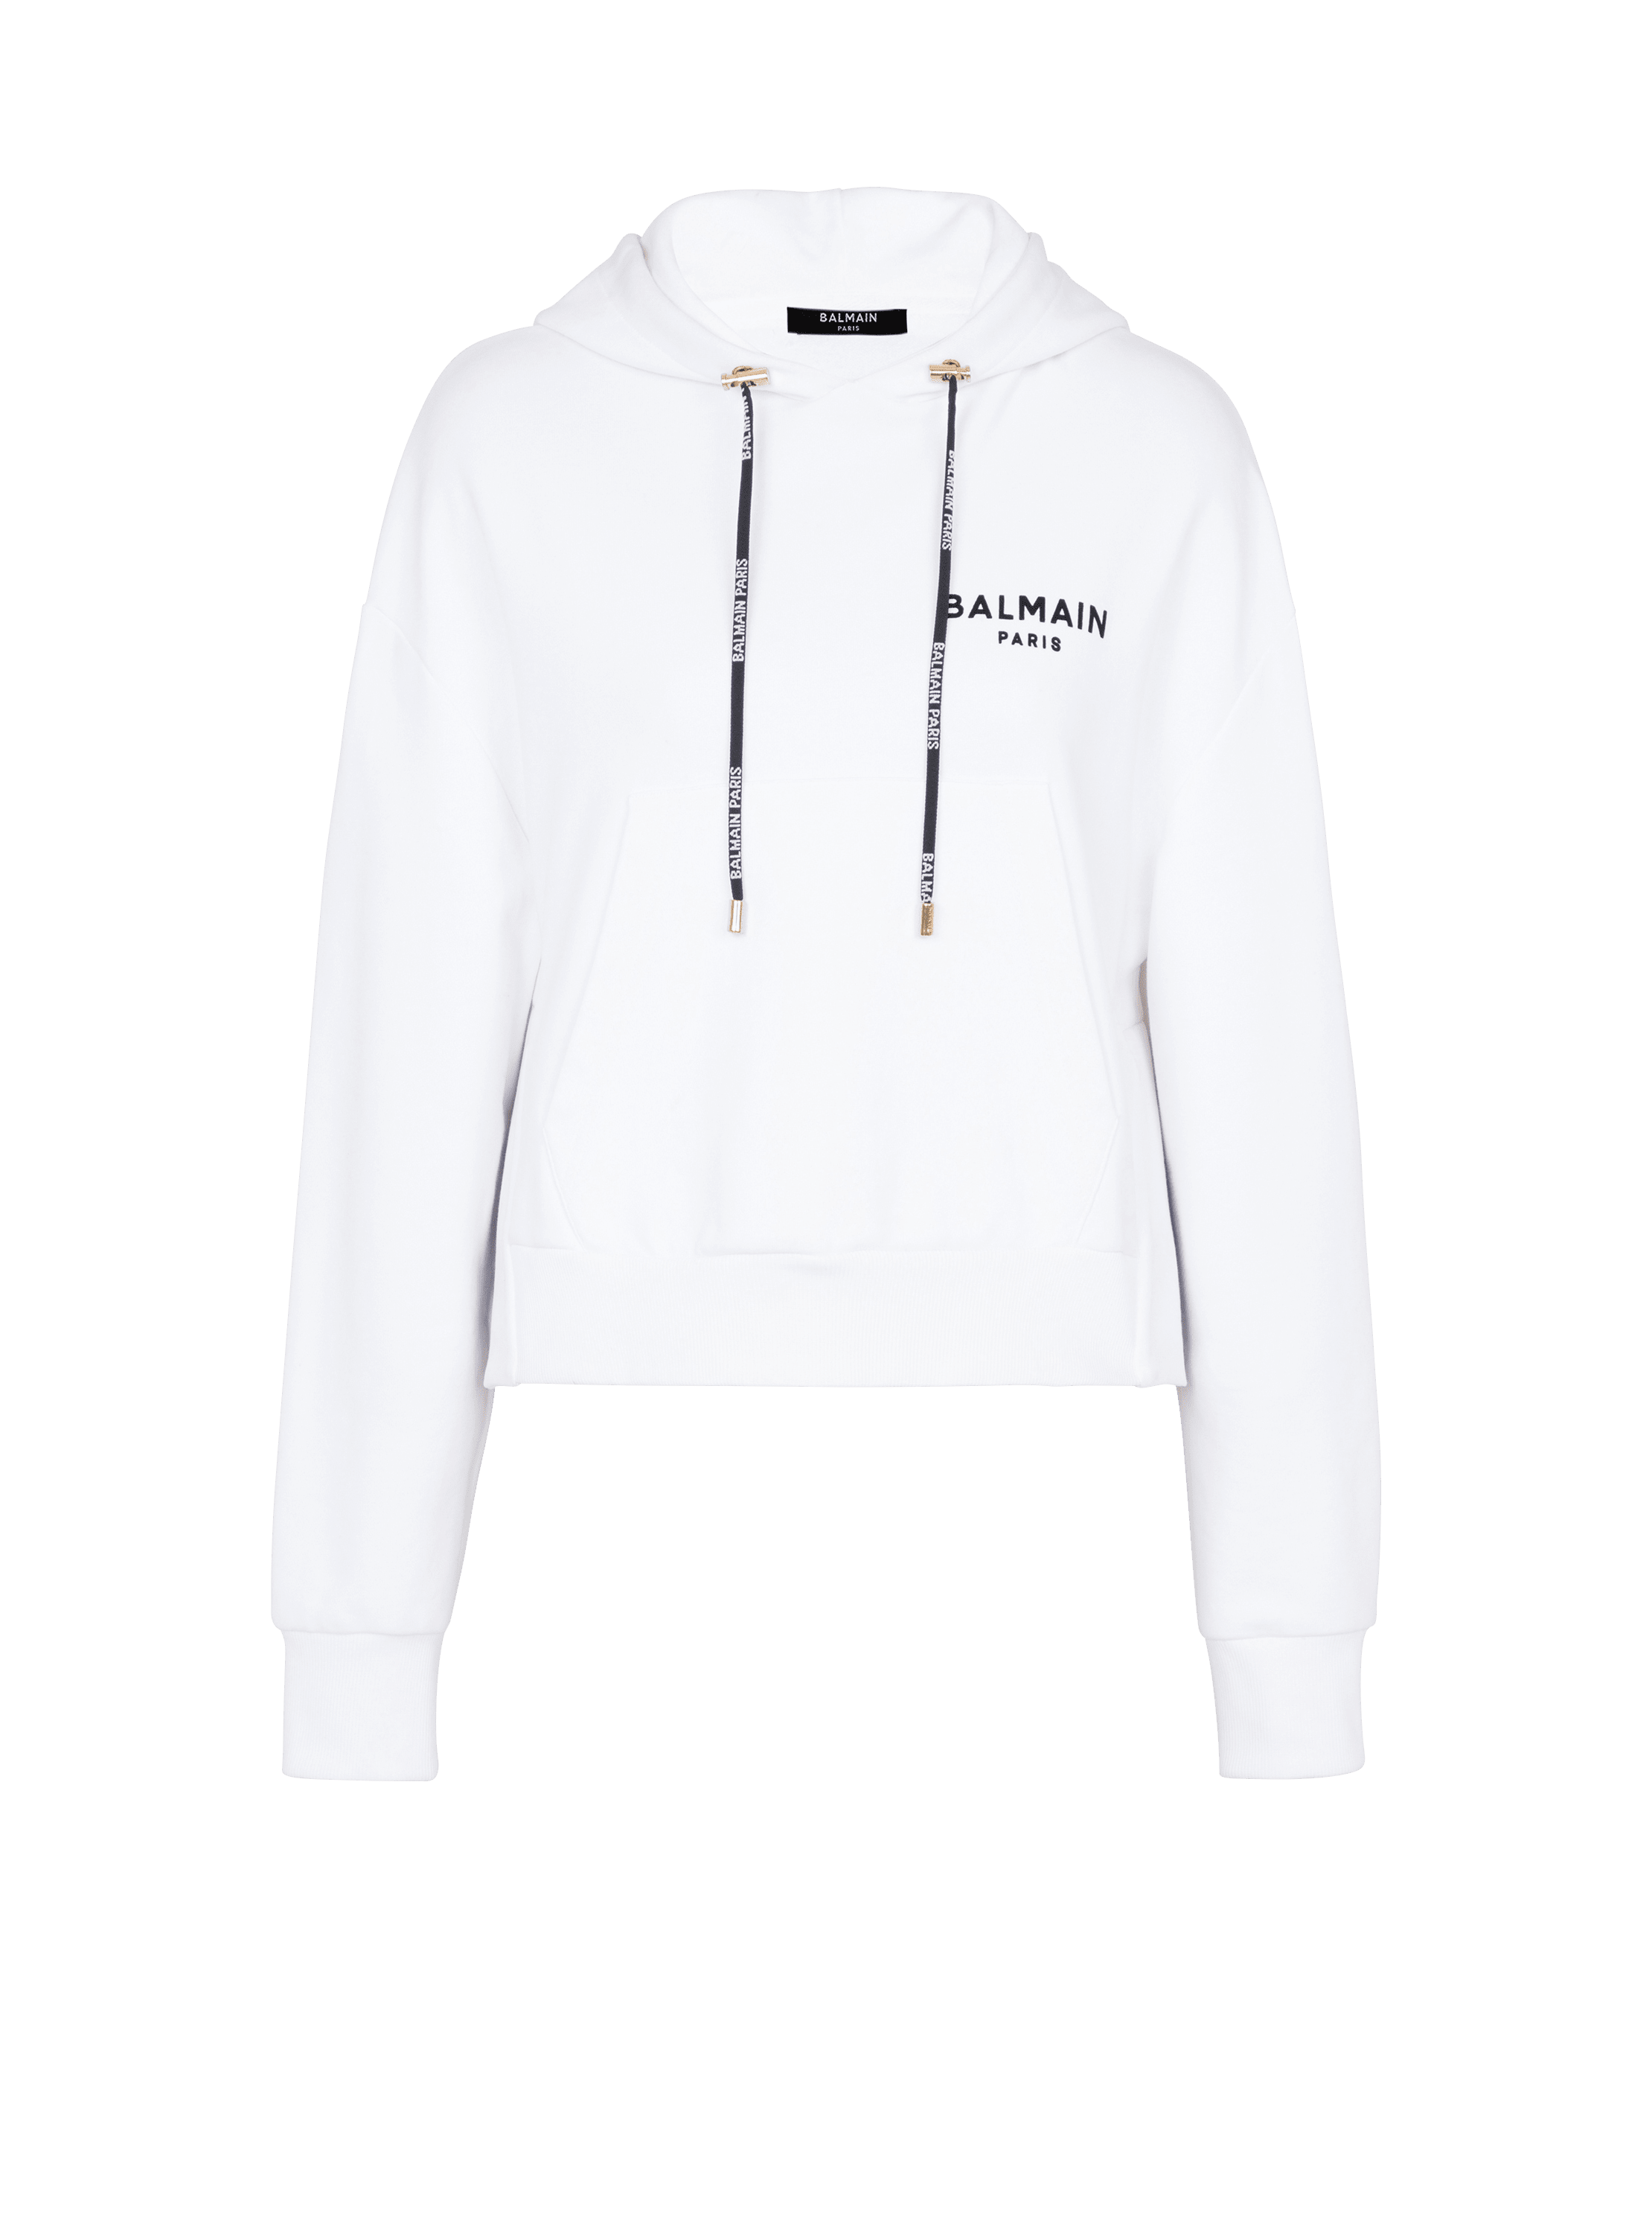 Sweat-shirt court éco-design en coton avec logo floqué Balmain, blanc, hi-res